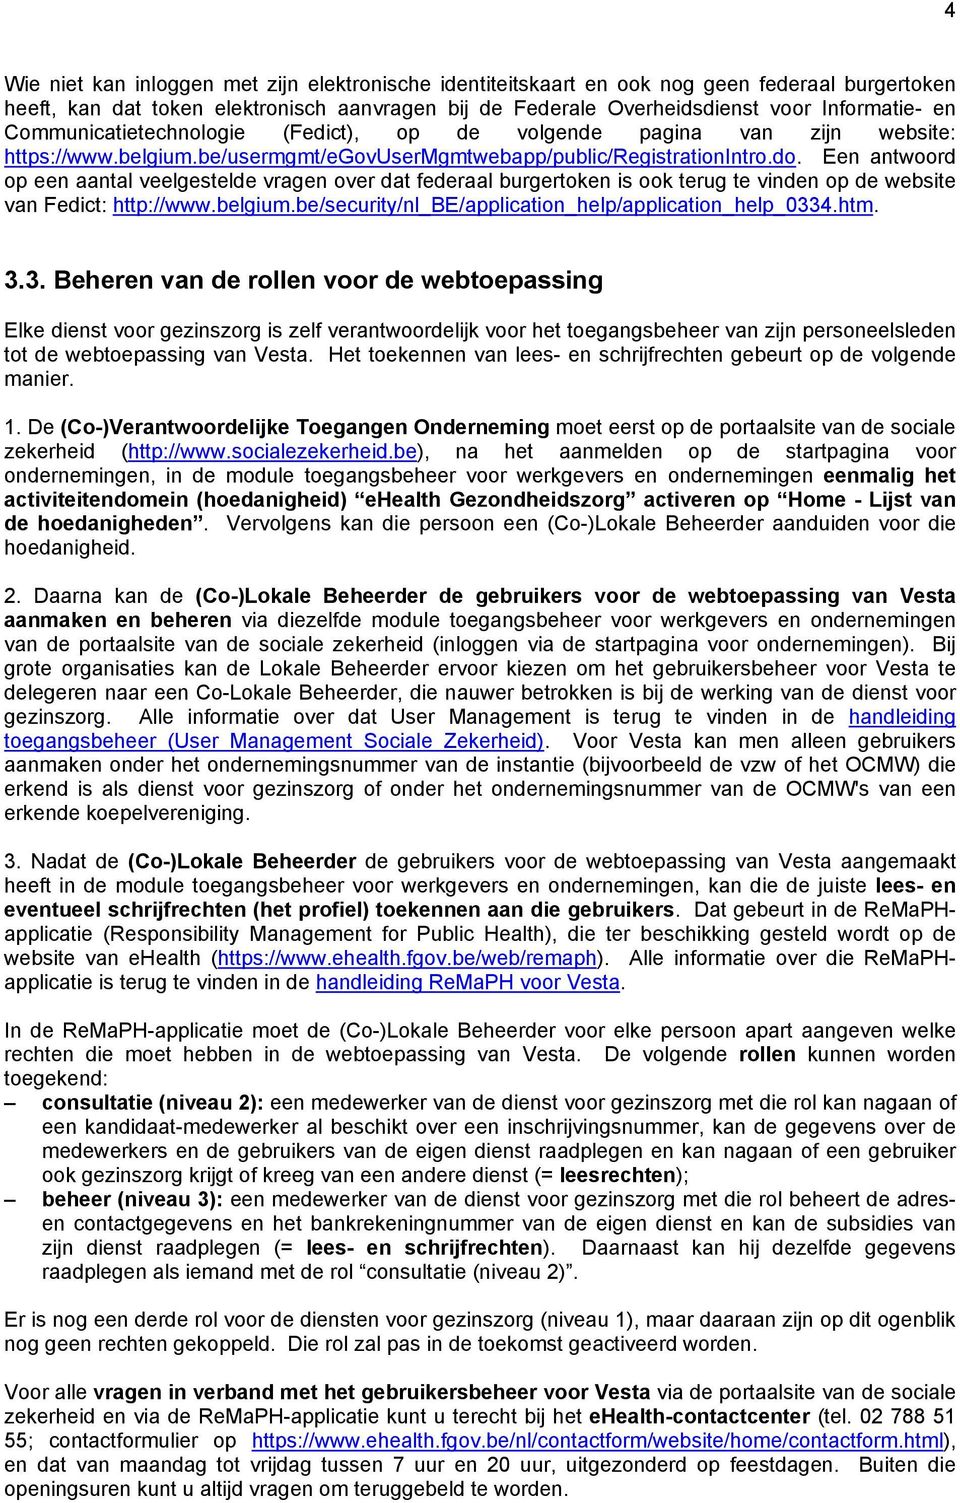 Een antwoord op een aantal veelgestelde vragen over dat federaal burgertoken is ook terug te vinden op de website van Fedict: http://www.belgium.